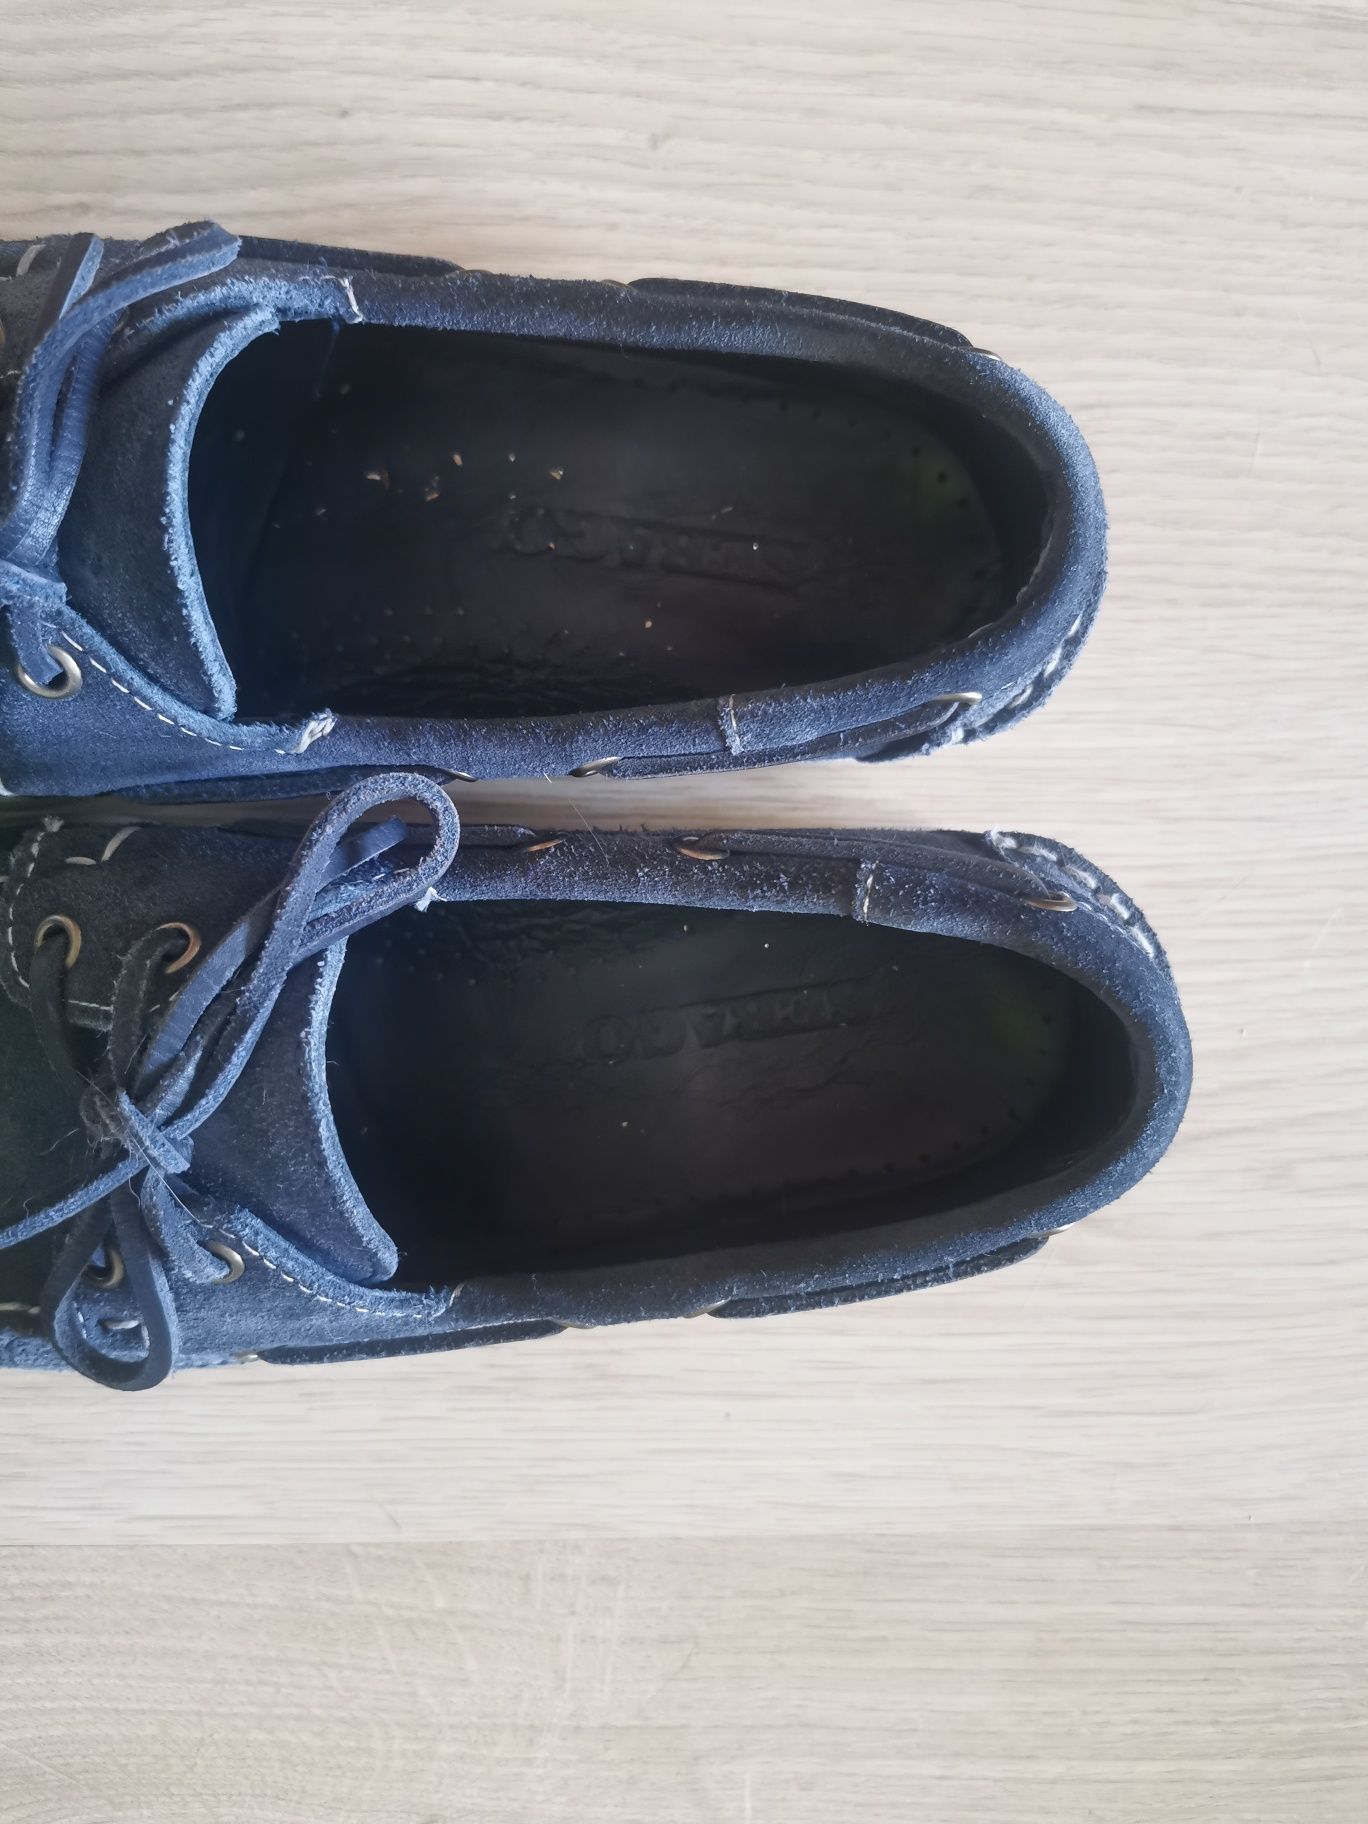 Granatowe buty żeglarskie Sebago, rozmiar 42